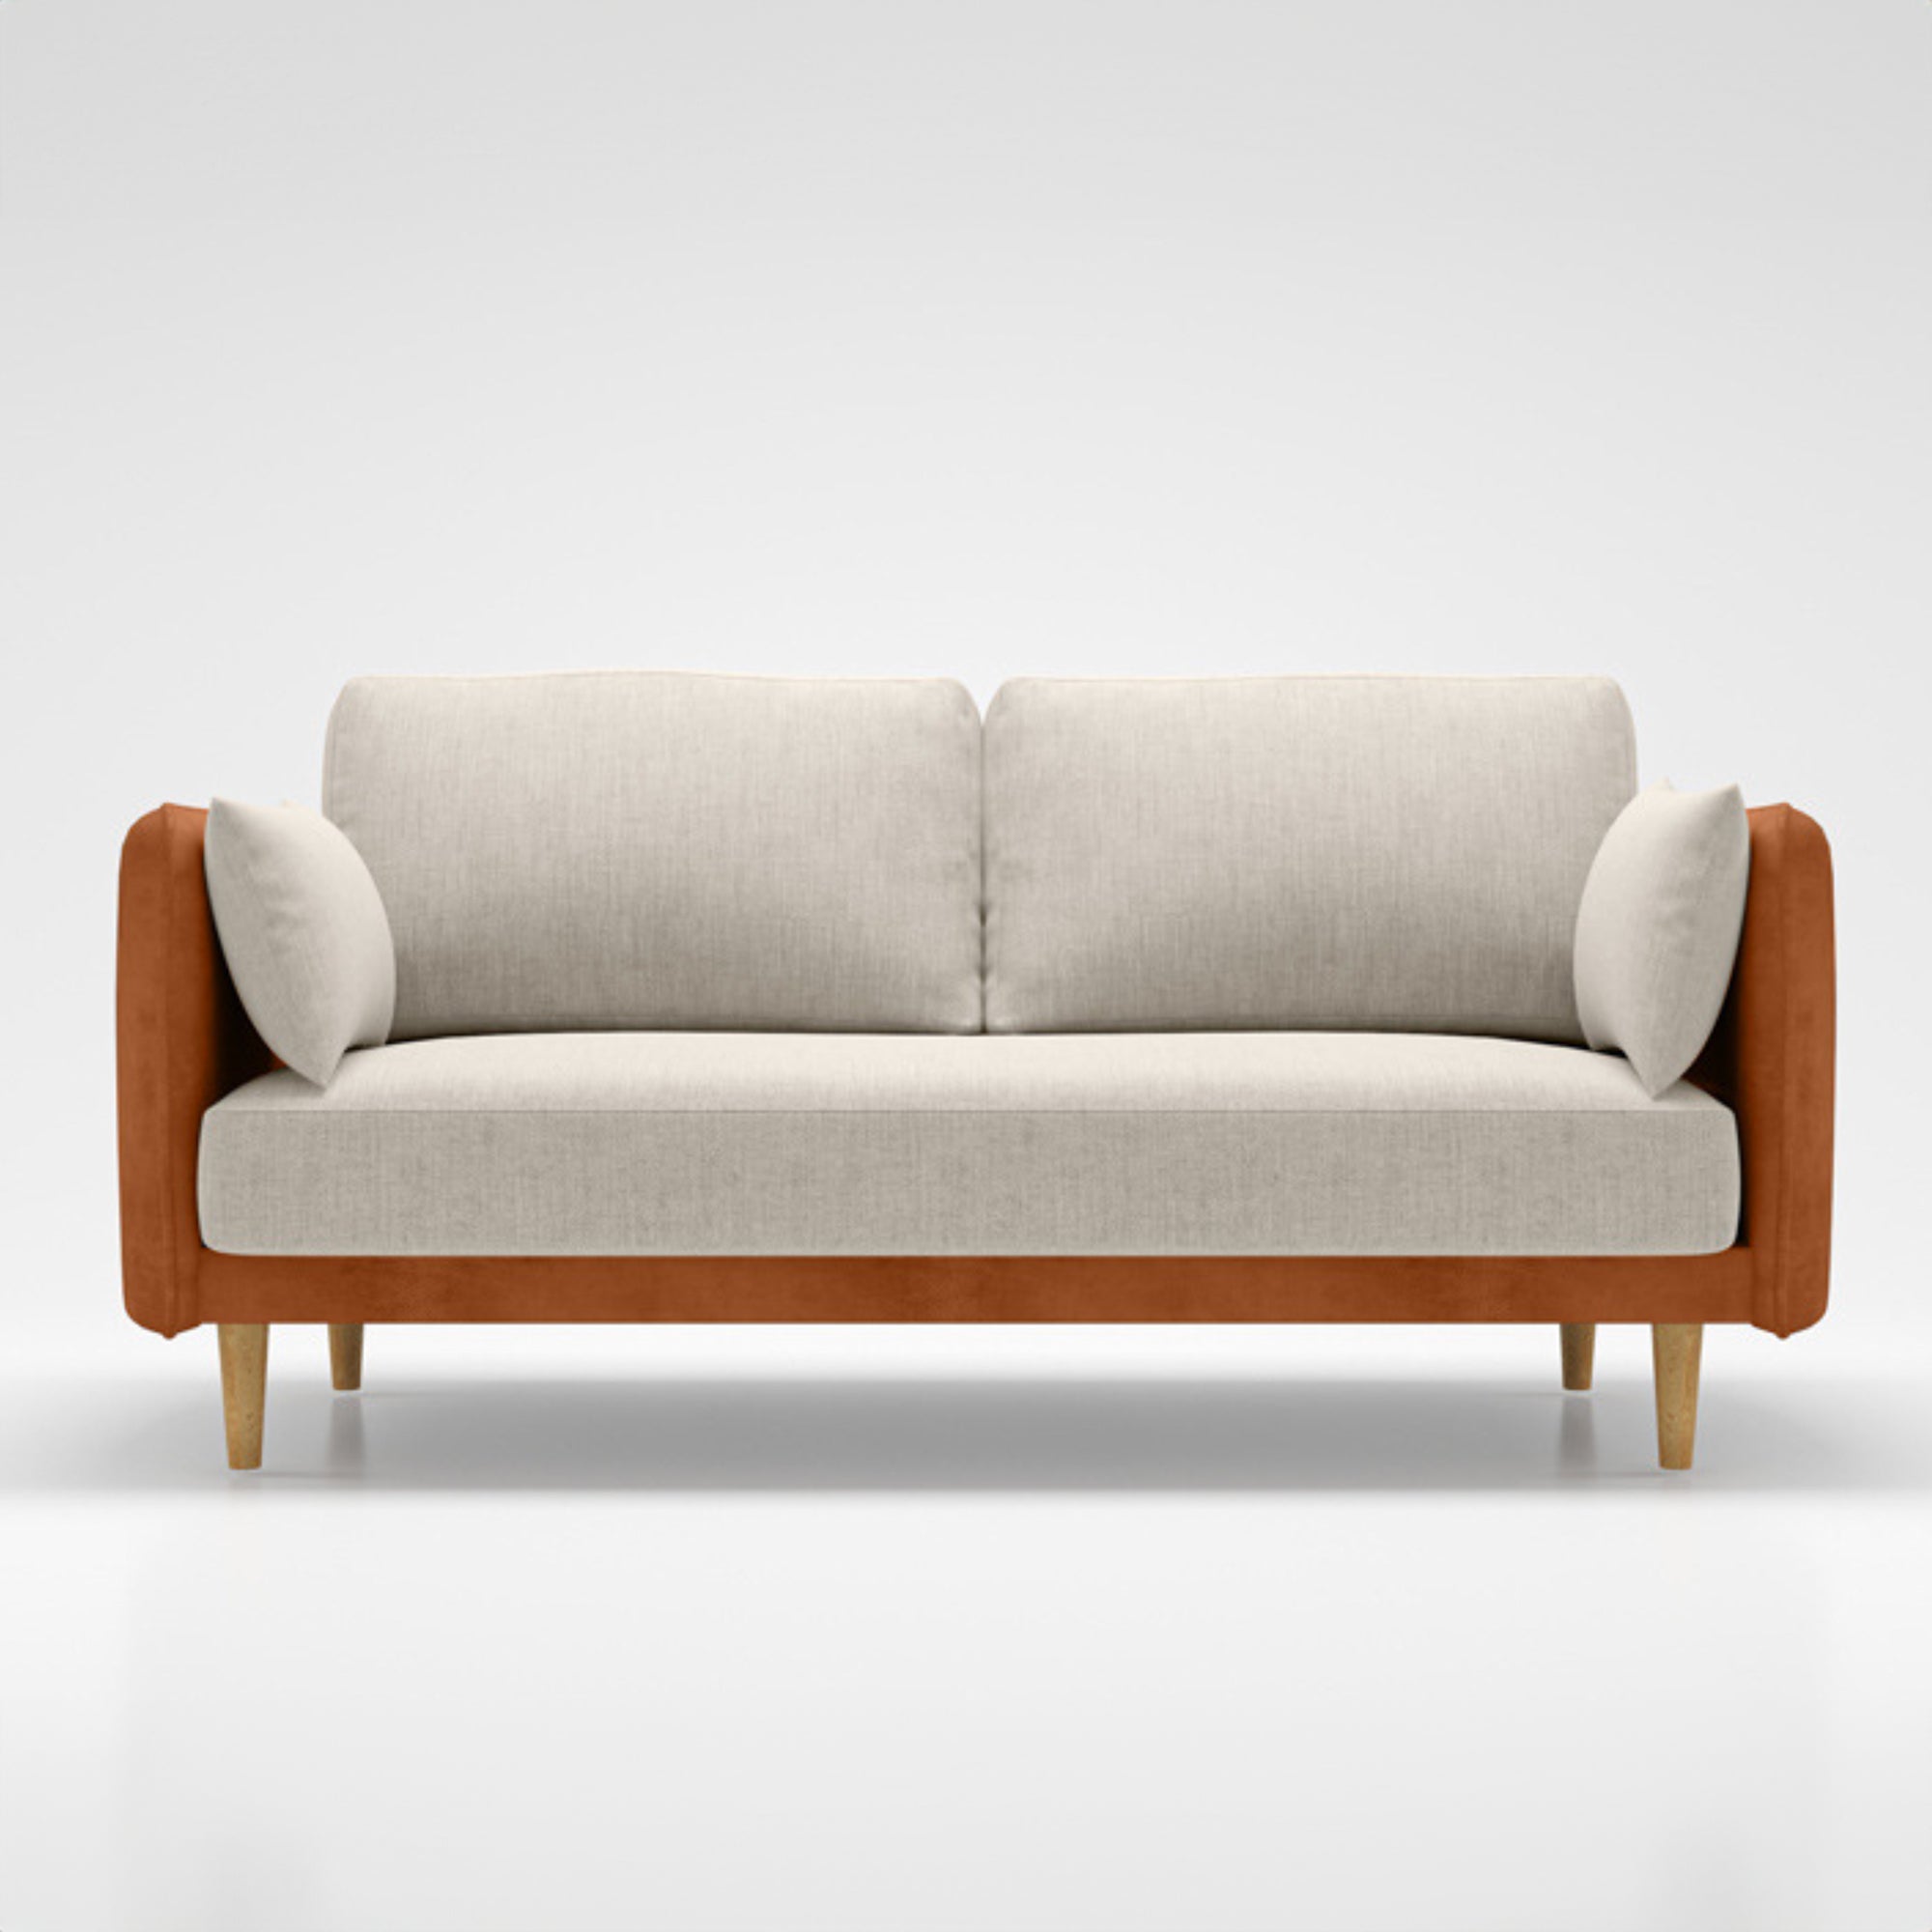 Kremer 2 Seater Linen Sofa